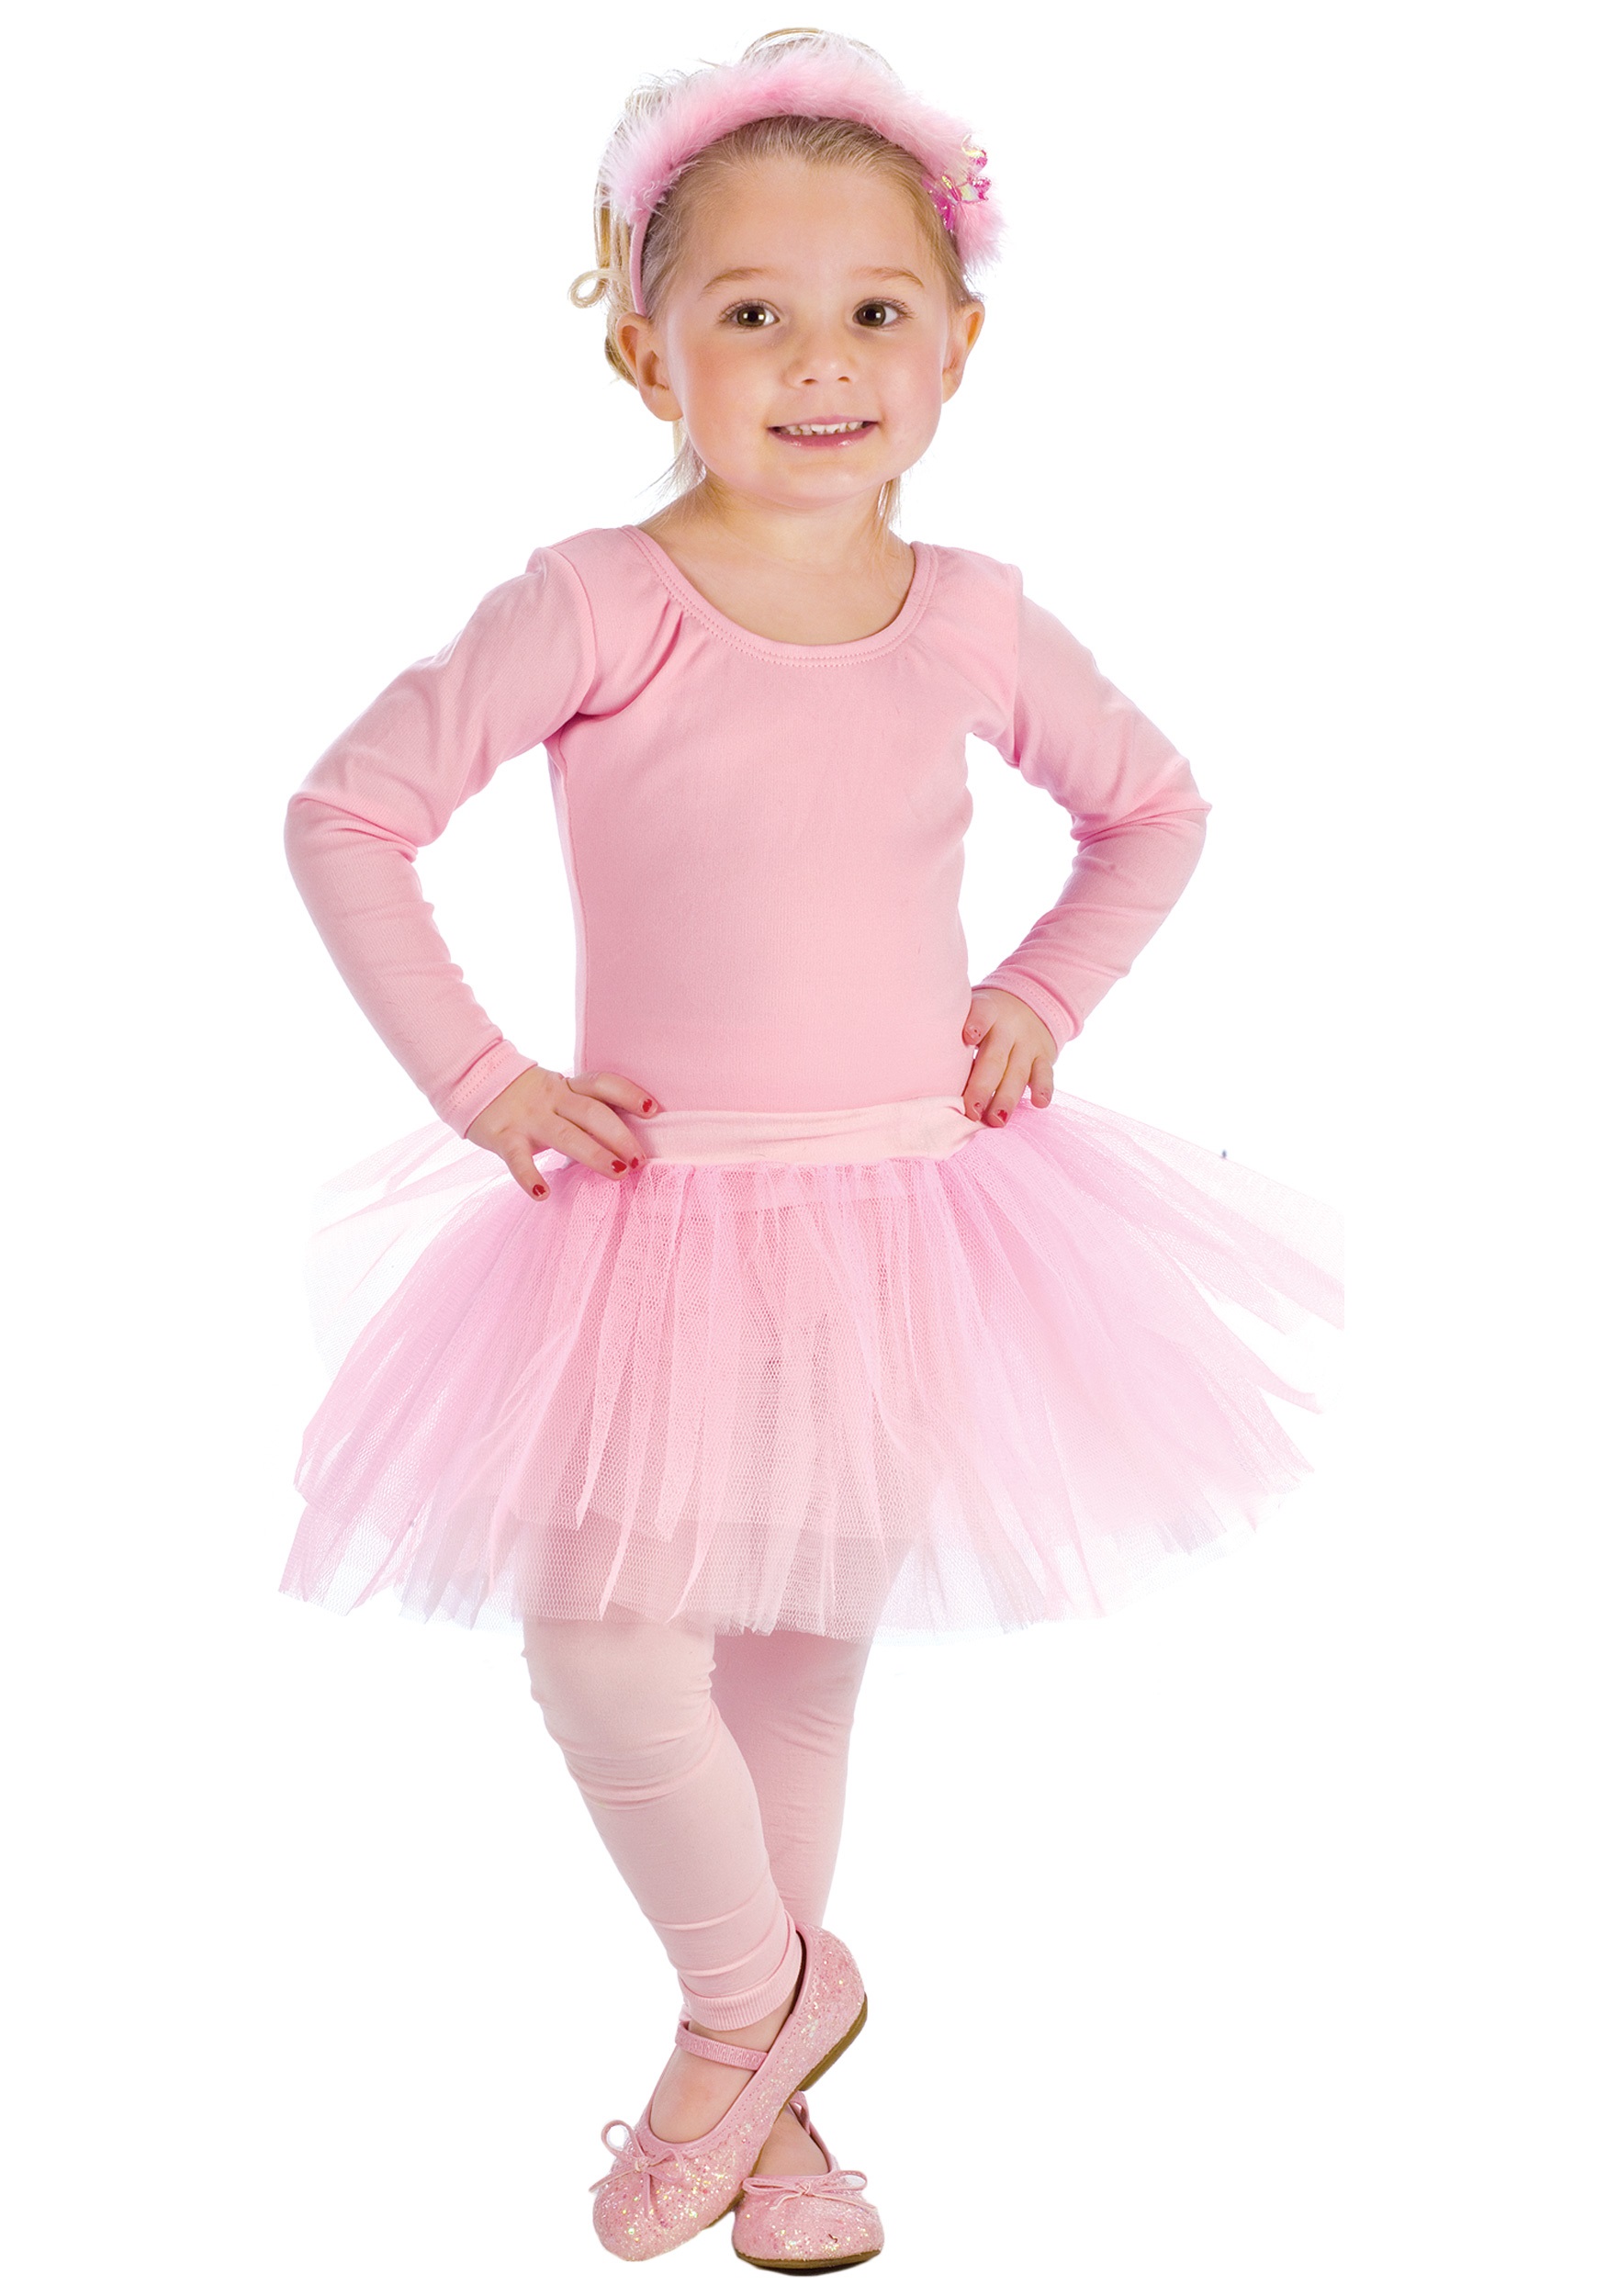 Pink Ballerina Tutu Halloween Costume Ideas 2021 